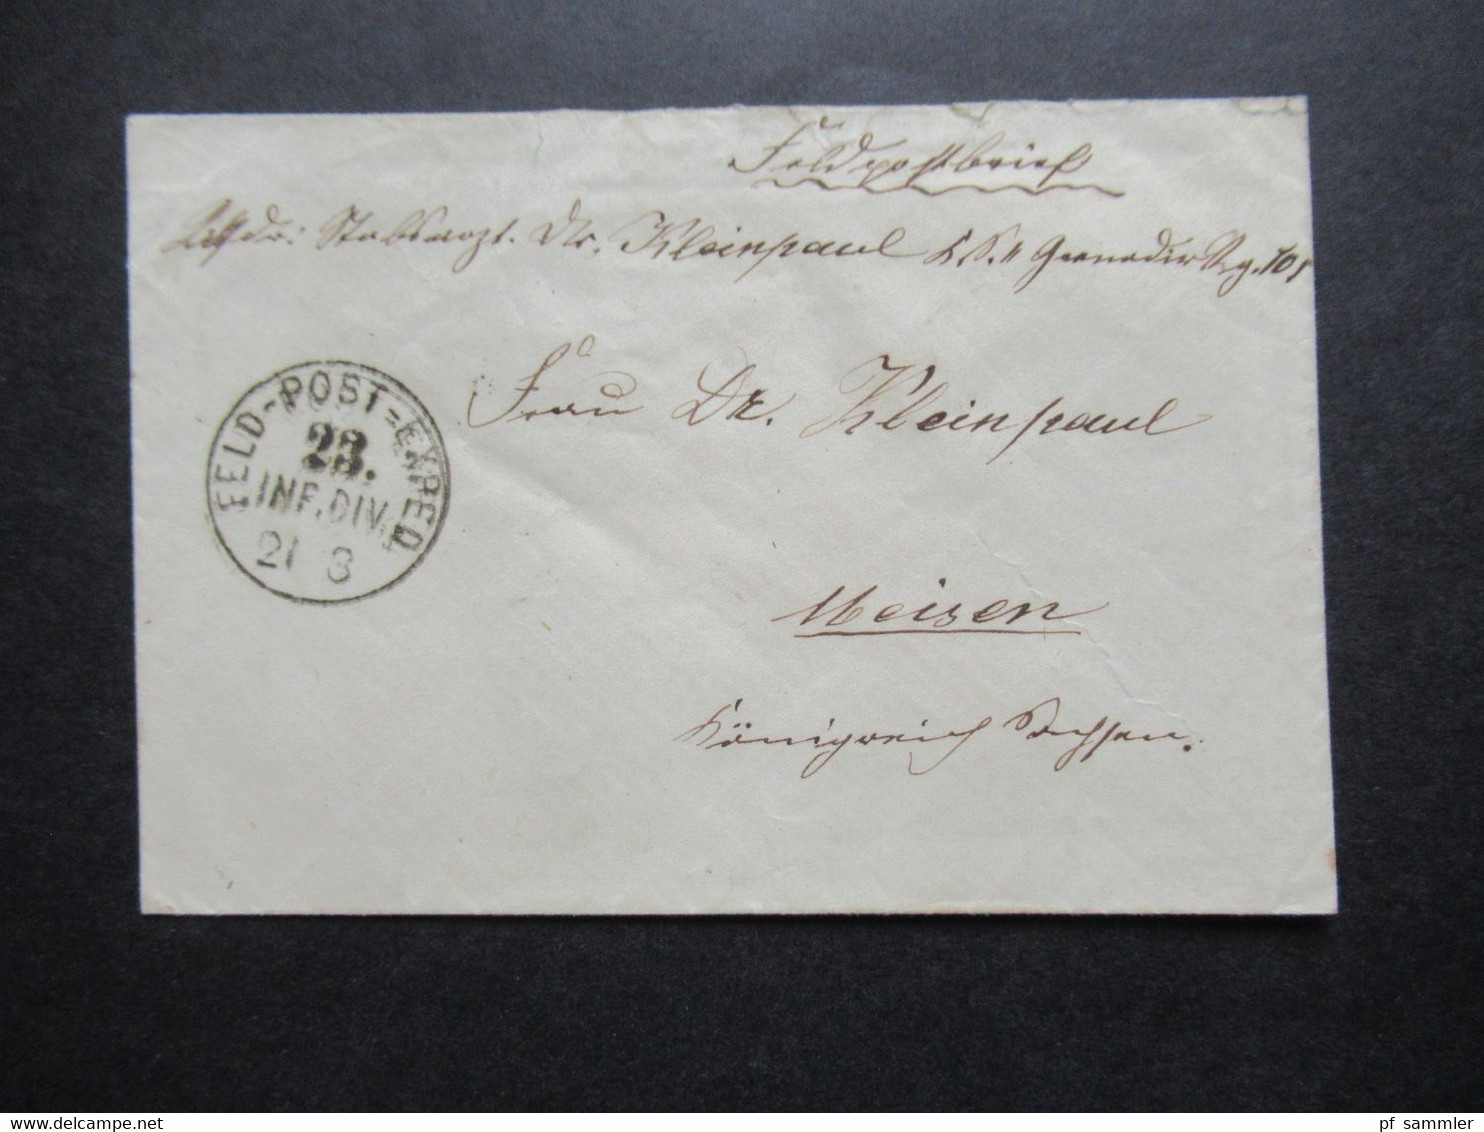 Feldpost Deutsch Französischer Krieg 1870 / 71 Stempel Feld - Post Exped. 23. Inf. Div. Nach Meissen Gesendet - Krieg 1870